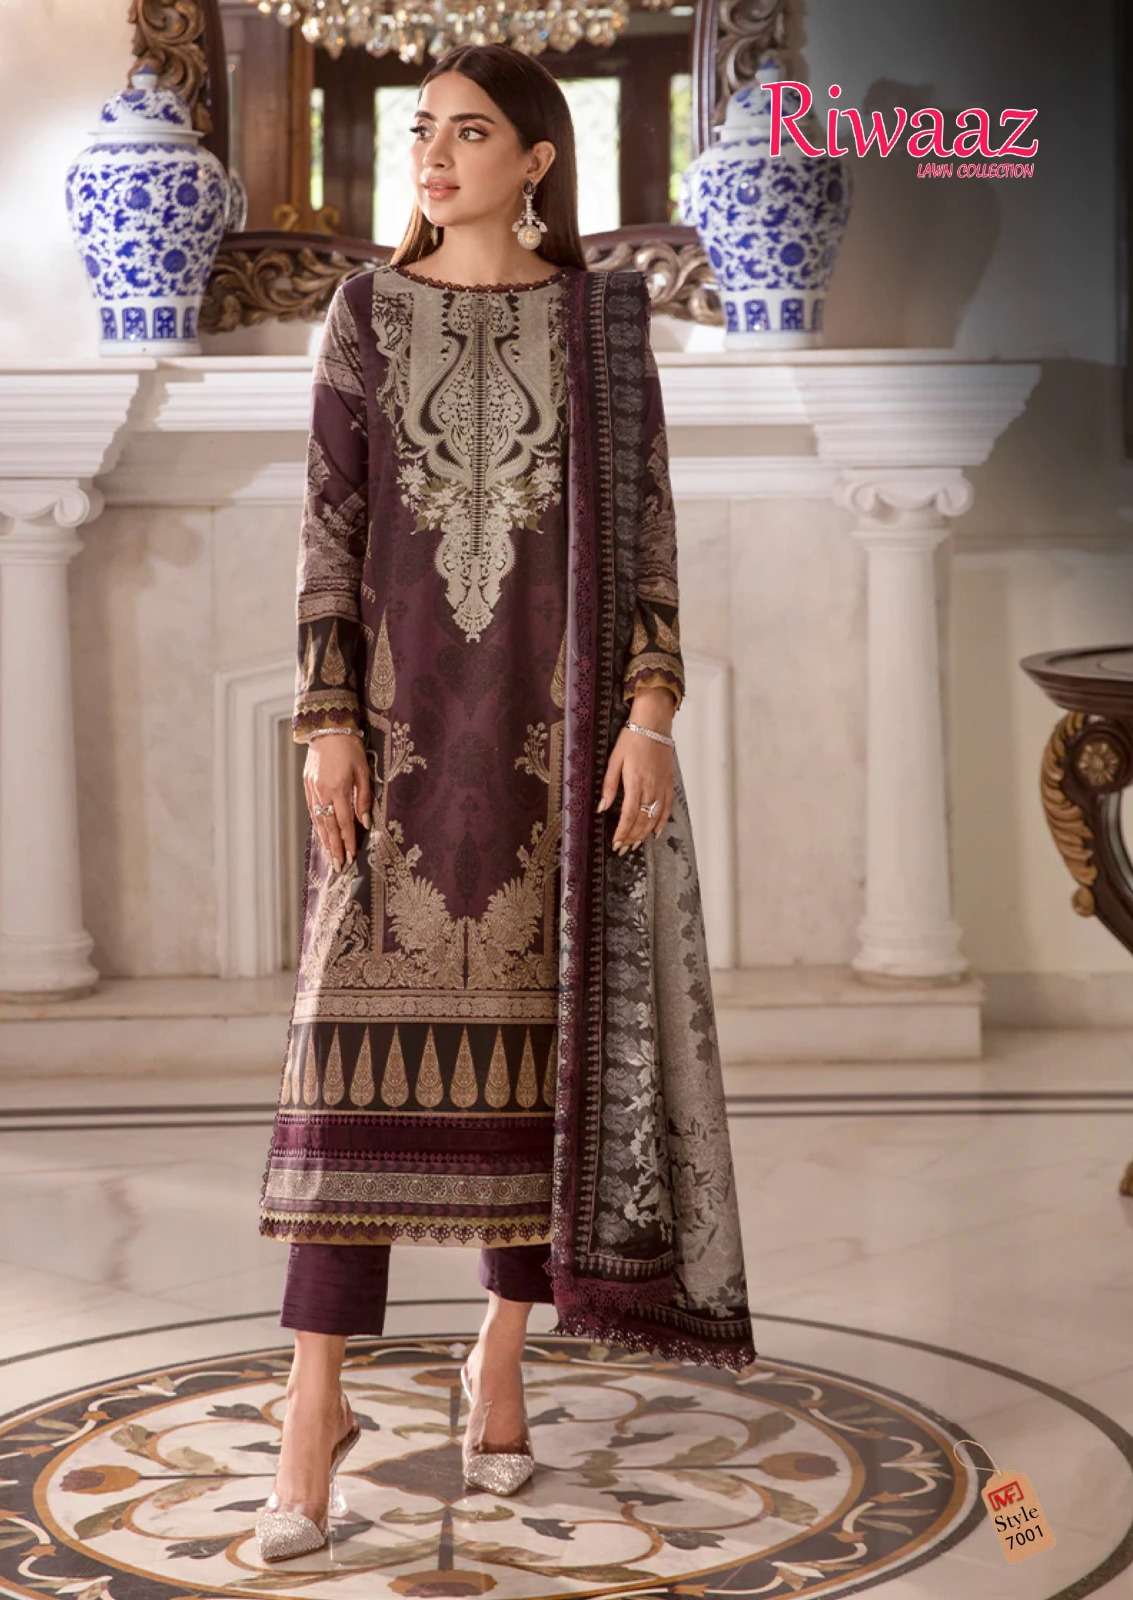 madhav fashion riwaaz vol-7 7001-7006 series latest fancy patiyala salwar kameez wholesaler surat gujarat